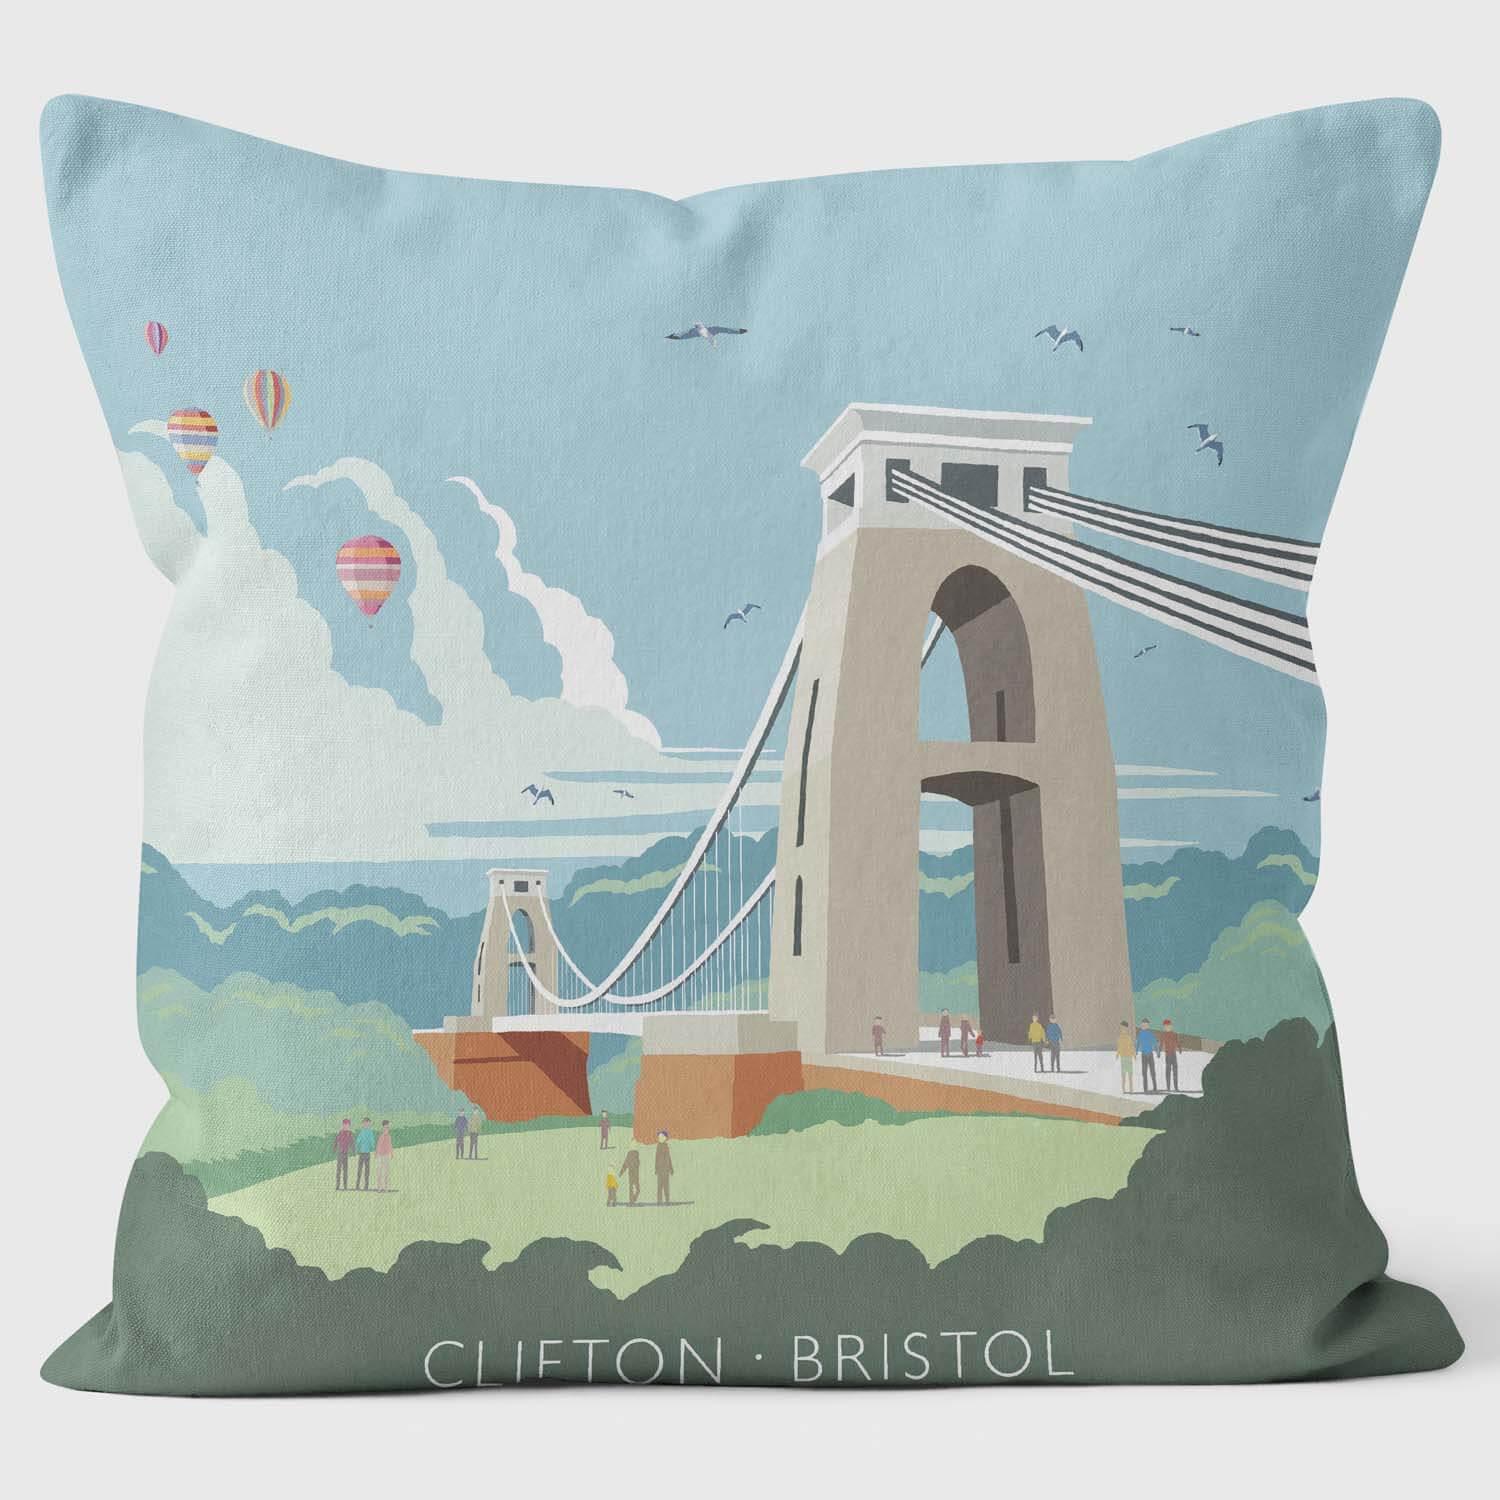 Clifton Bridge Bristol - Martin Wiscombe Cushion - Handmade Cushions UK - WeLoveCushions